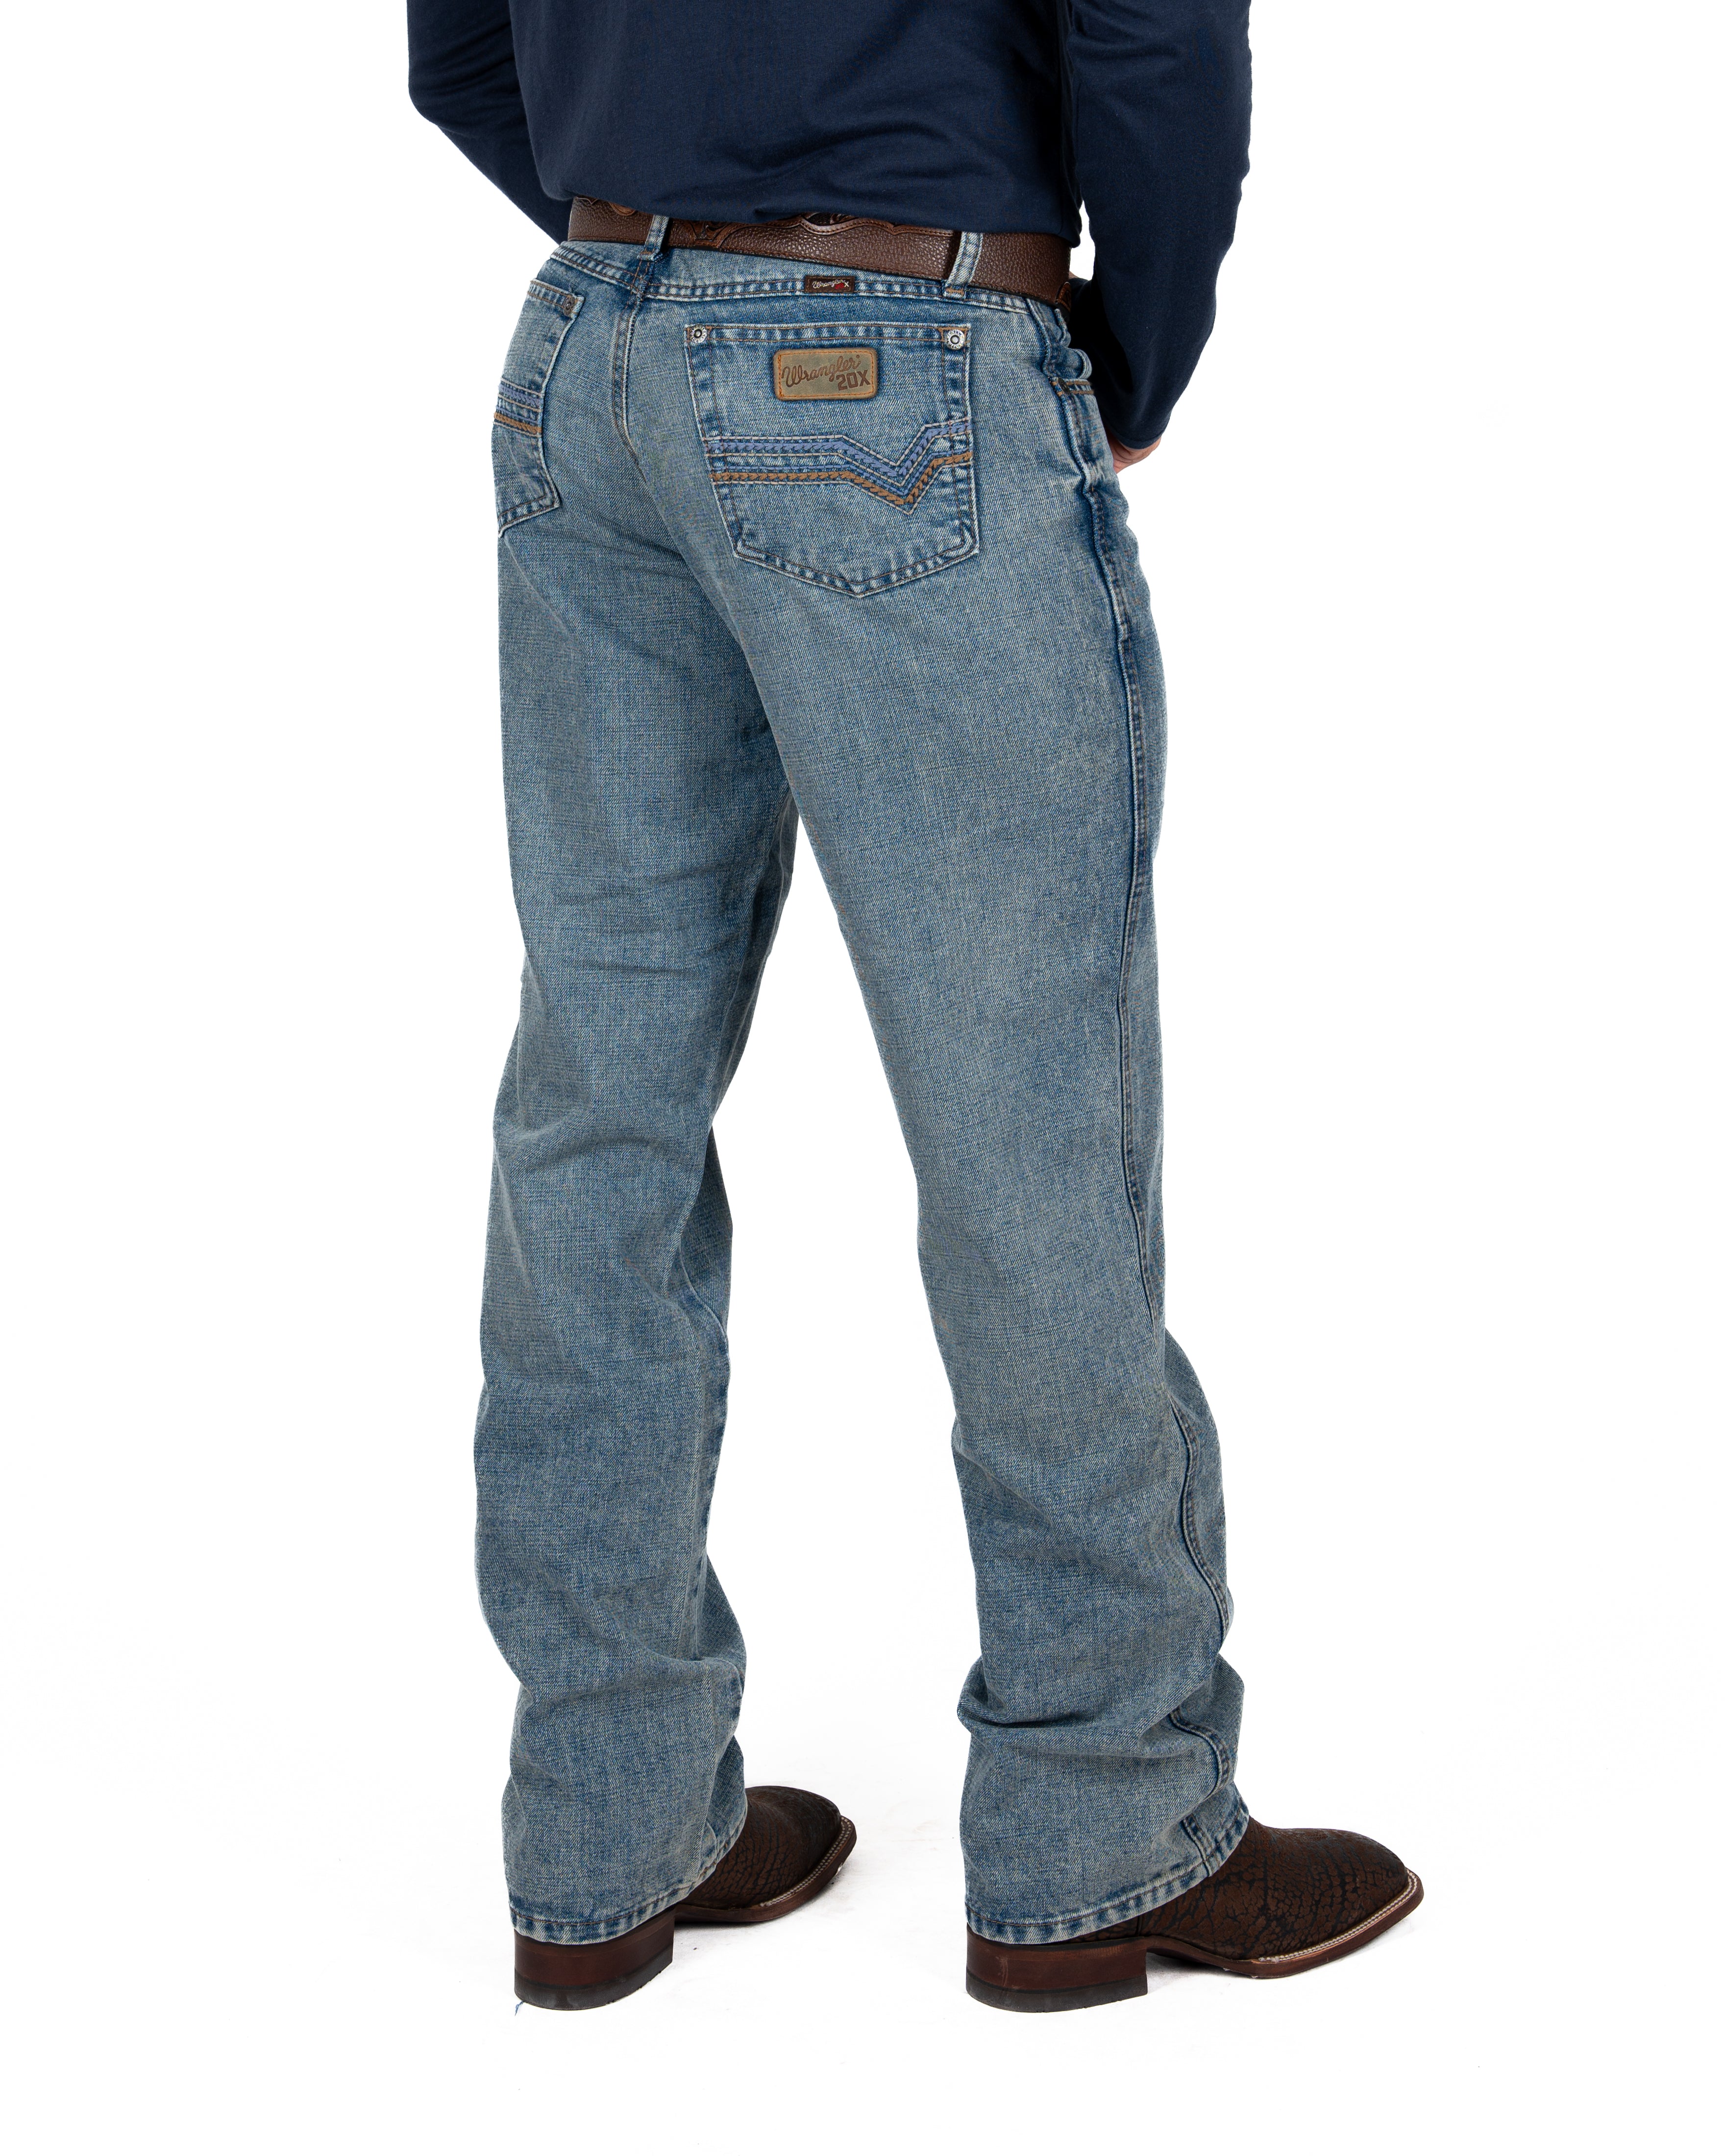 Jeans Wrangler 20 X Caballero